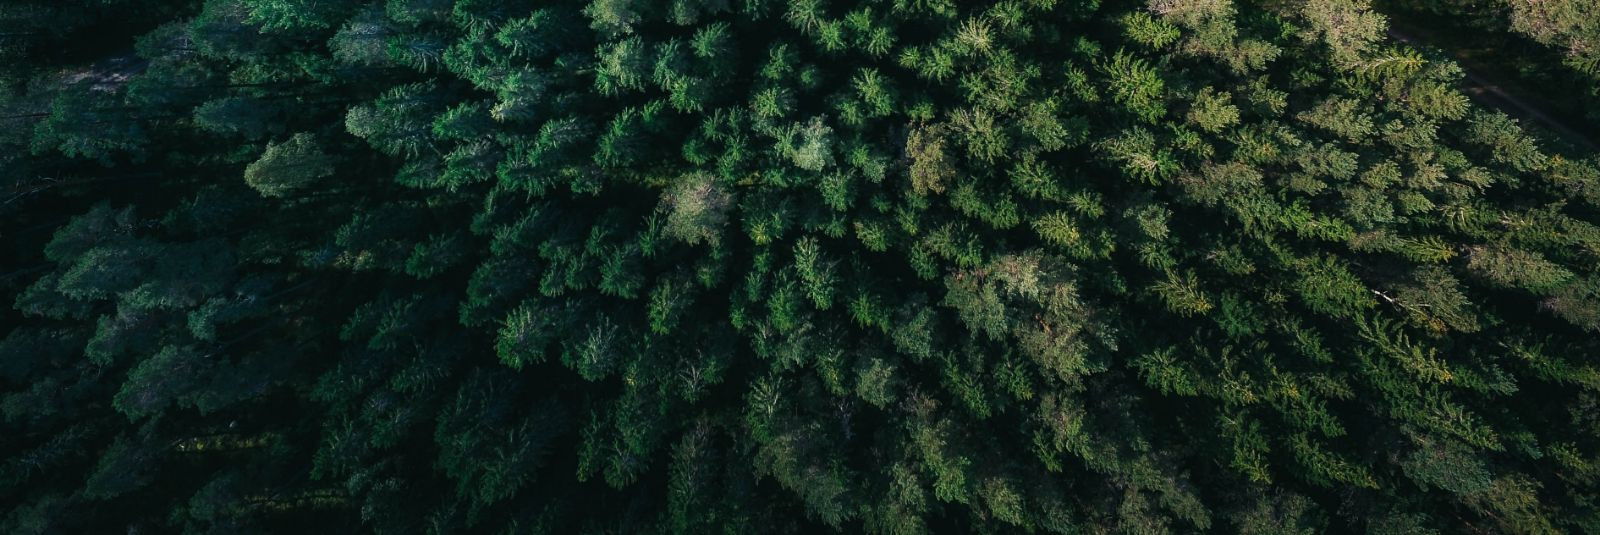 Mets on üks Eesti rikkusi, pakkudes mitte ainult majanduslikku kasu, vaid ka olulist ökoloogilist ja esteetilist väärtust. Kui olete metsaomanik, siis teate, et